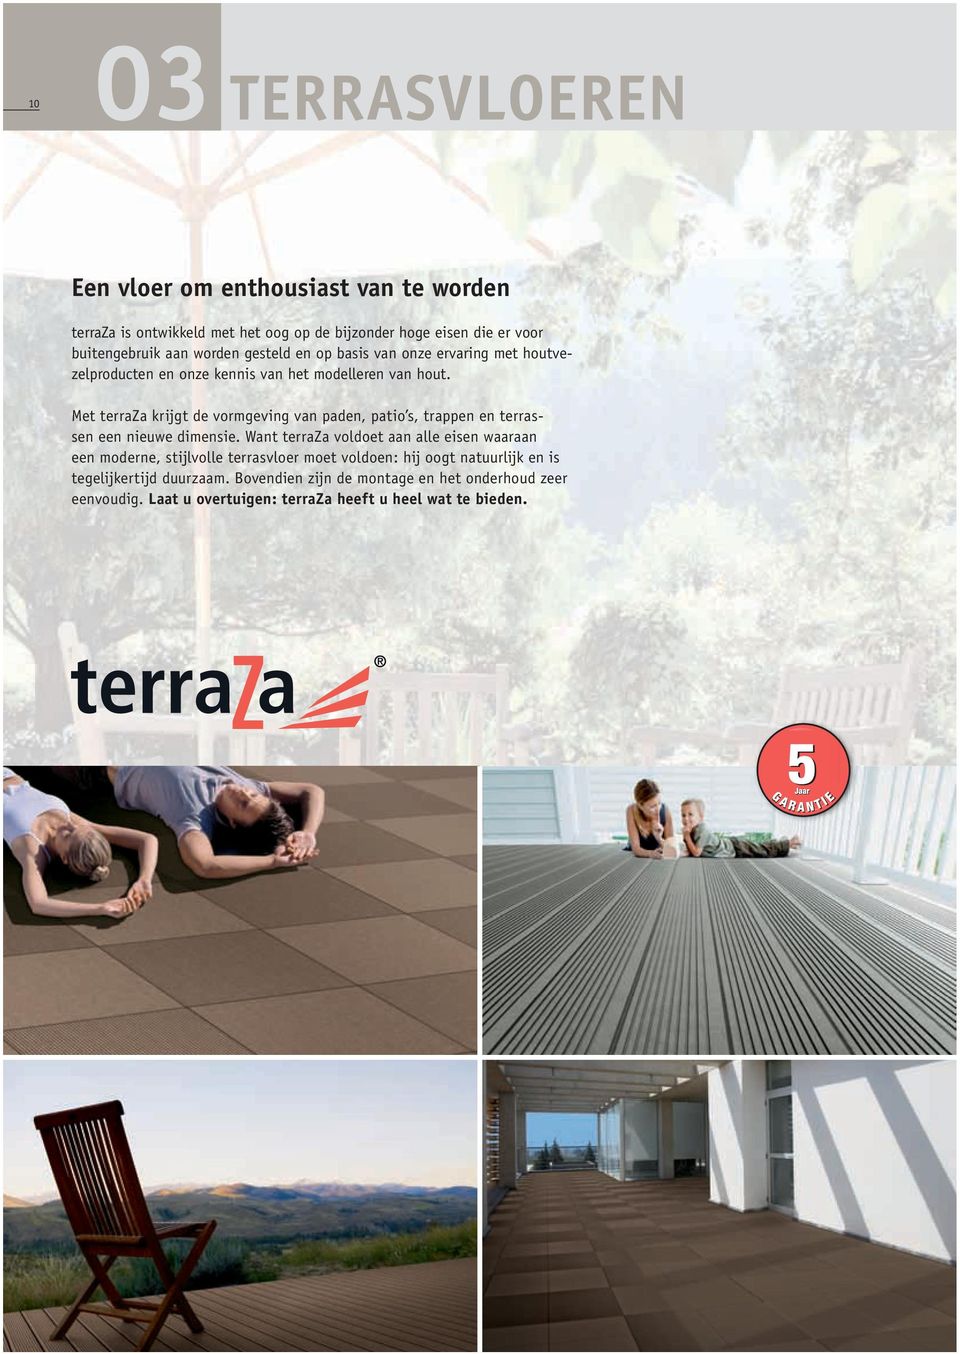 Met terraza krijgt de vormgeving van paden, patio s, trappen en terrassen een nieuwe dimensie.